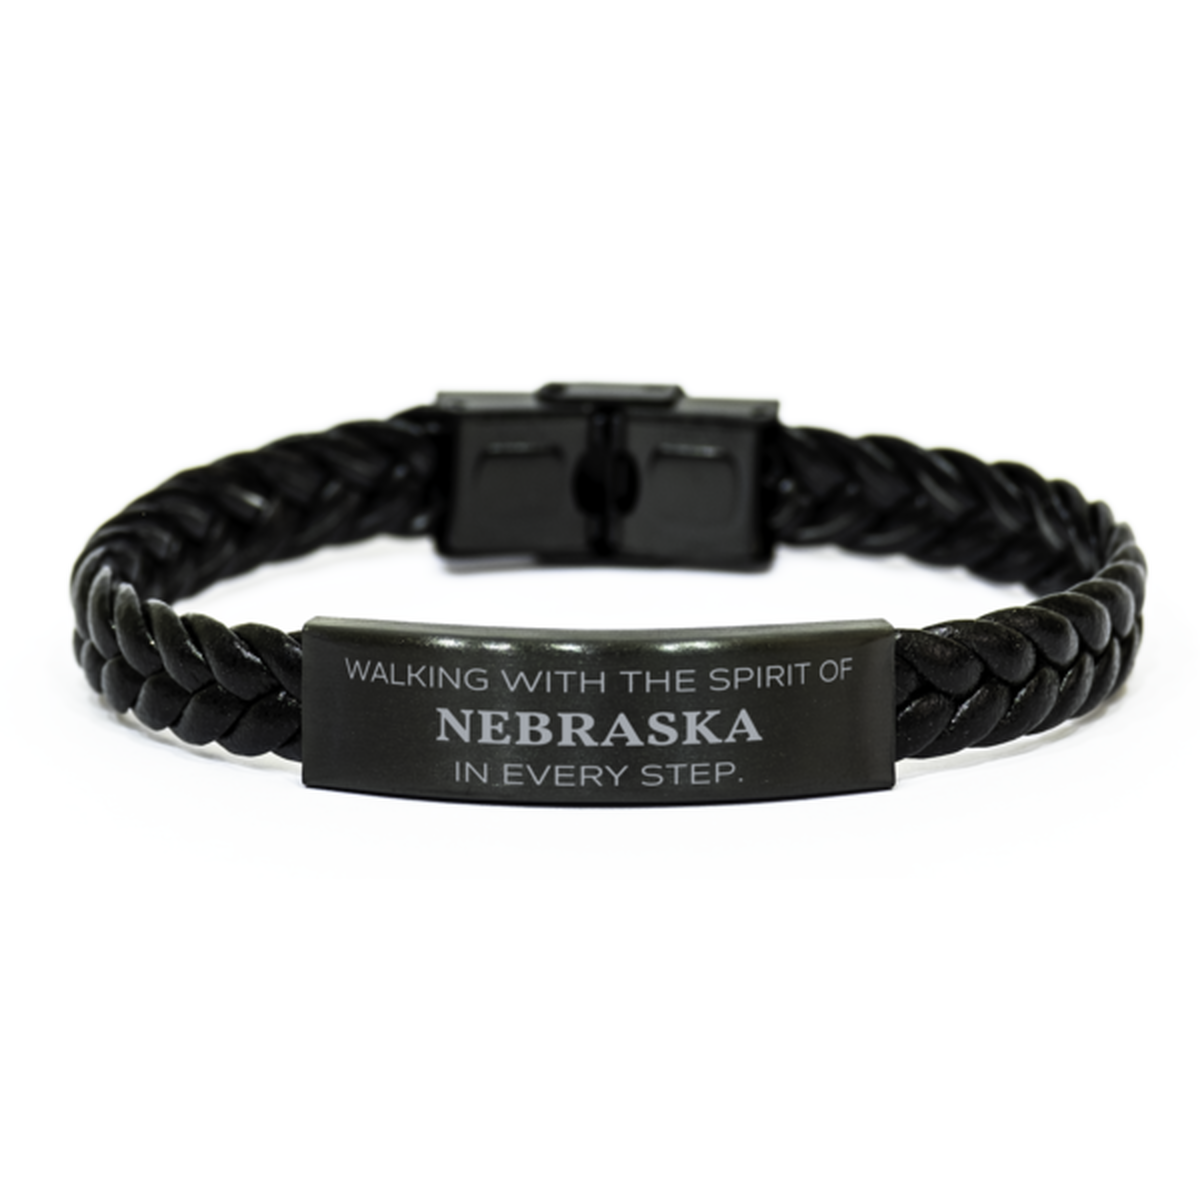 Nebraska Gifts, Walking with the spirit, Love Nebraska Birthday Christmas Braided Leather Bracelet For Nebraska People, Men, Women, Friends